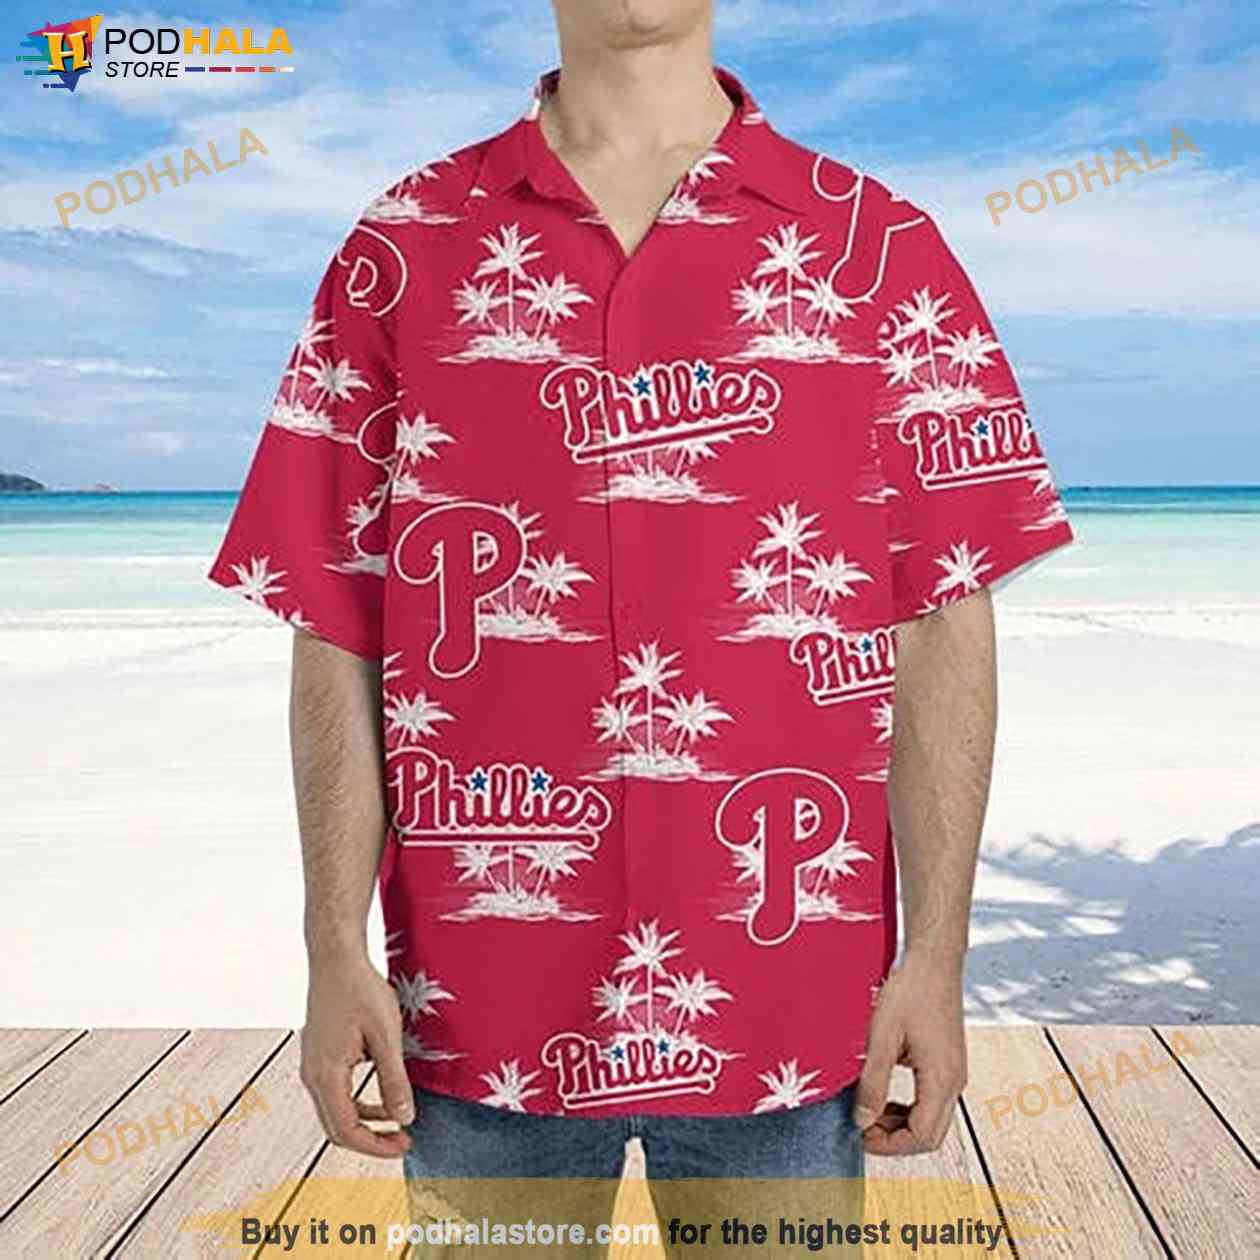 Philadelphia Phillies Logo MLB Baseball Jersey Shirt For Men And